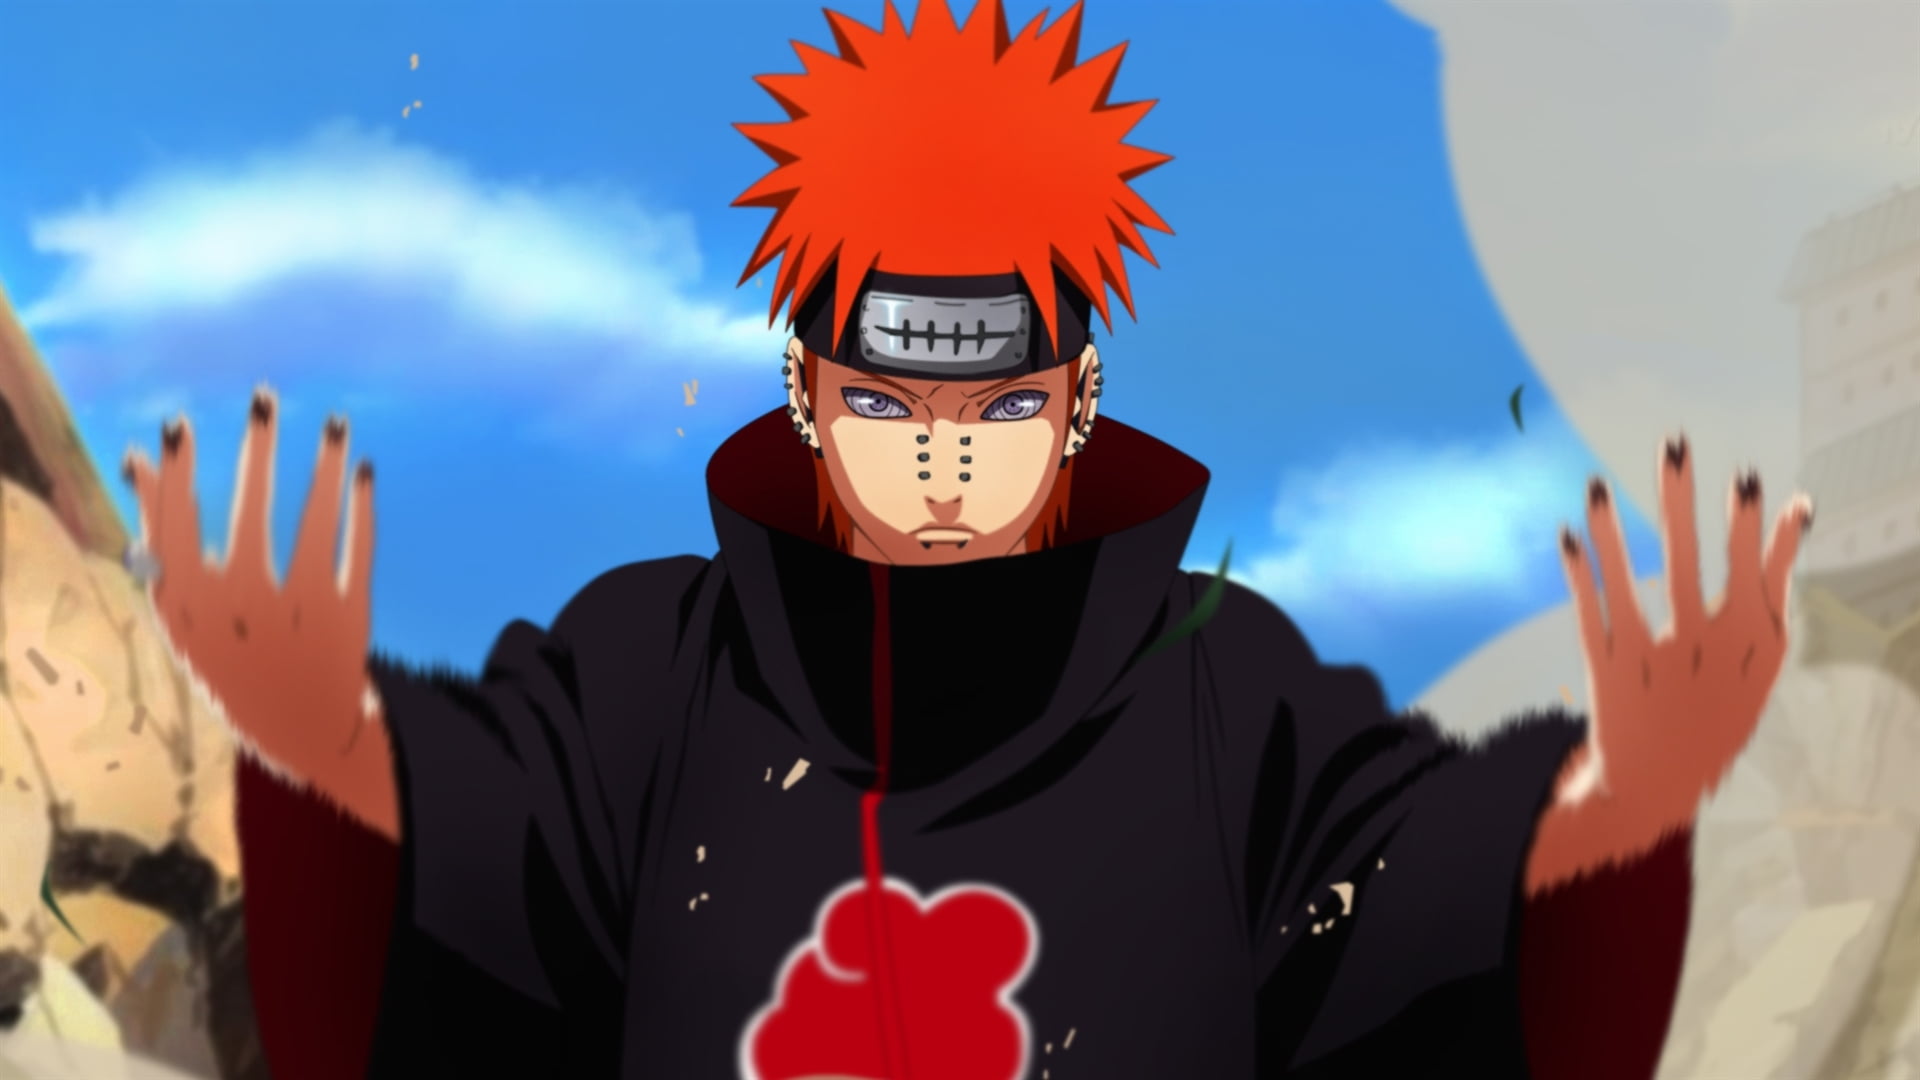 Naruto Shippudden Pain illustration, Anime, people, men, costume